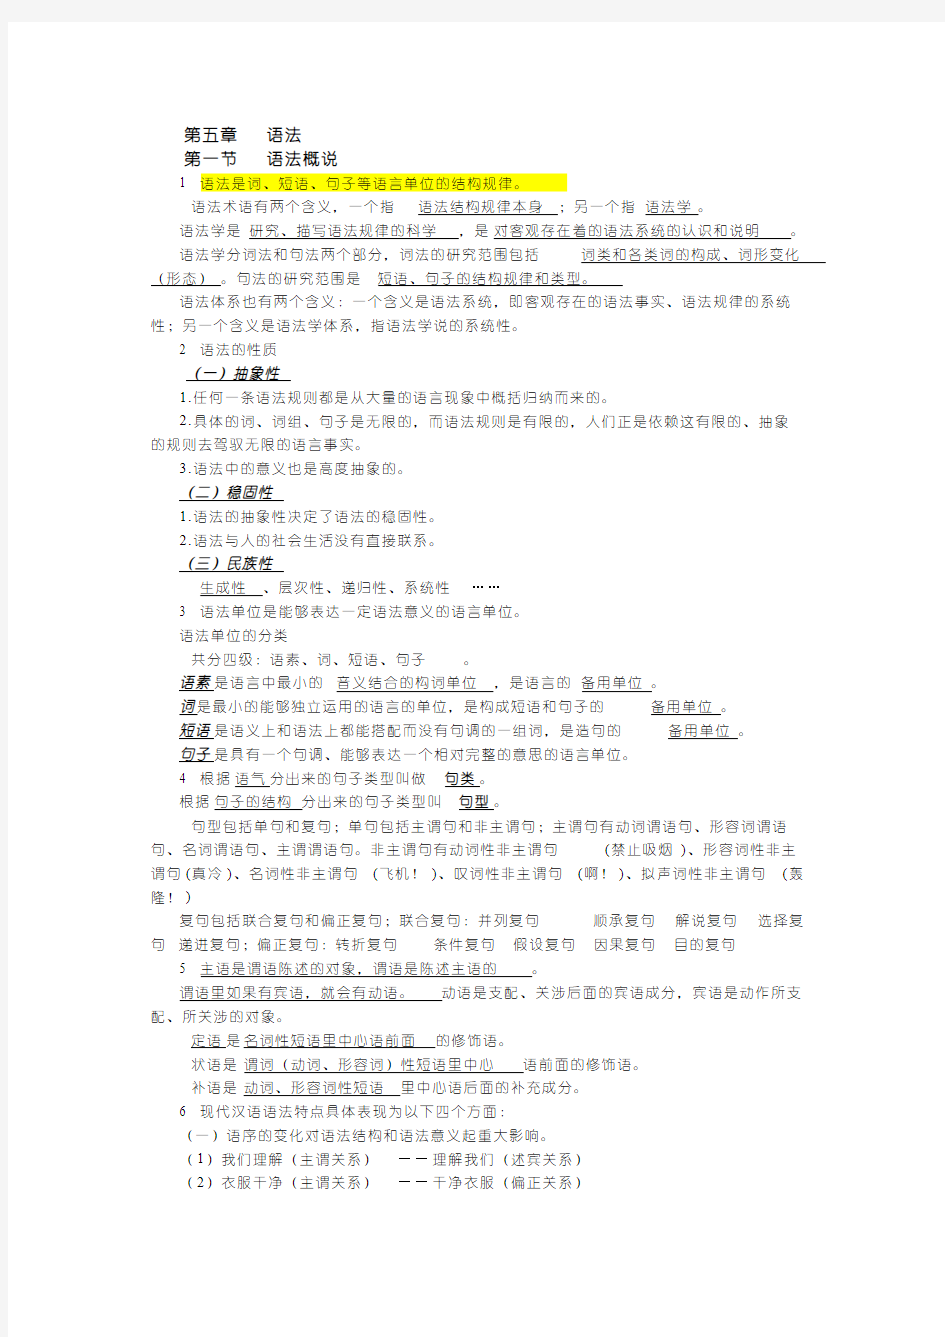 【免费下载】 现代汉语笔记整理